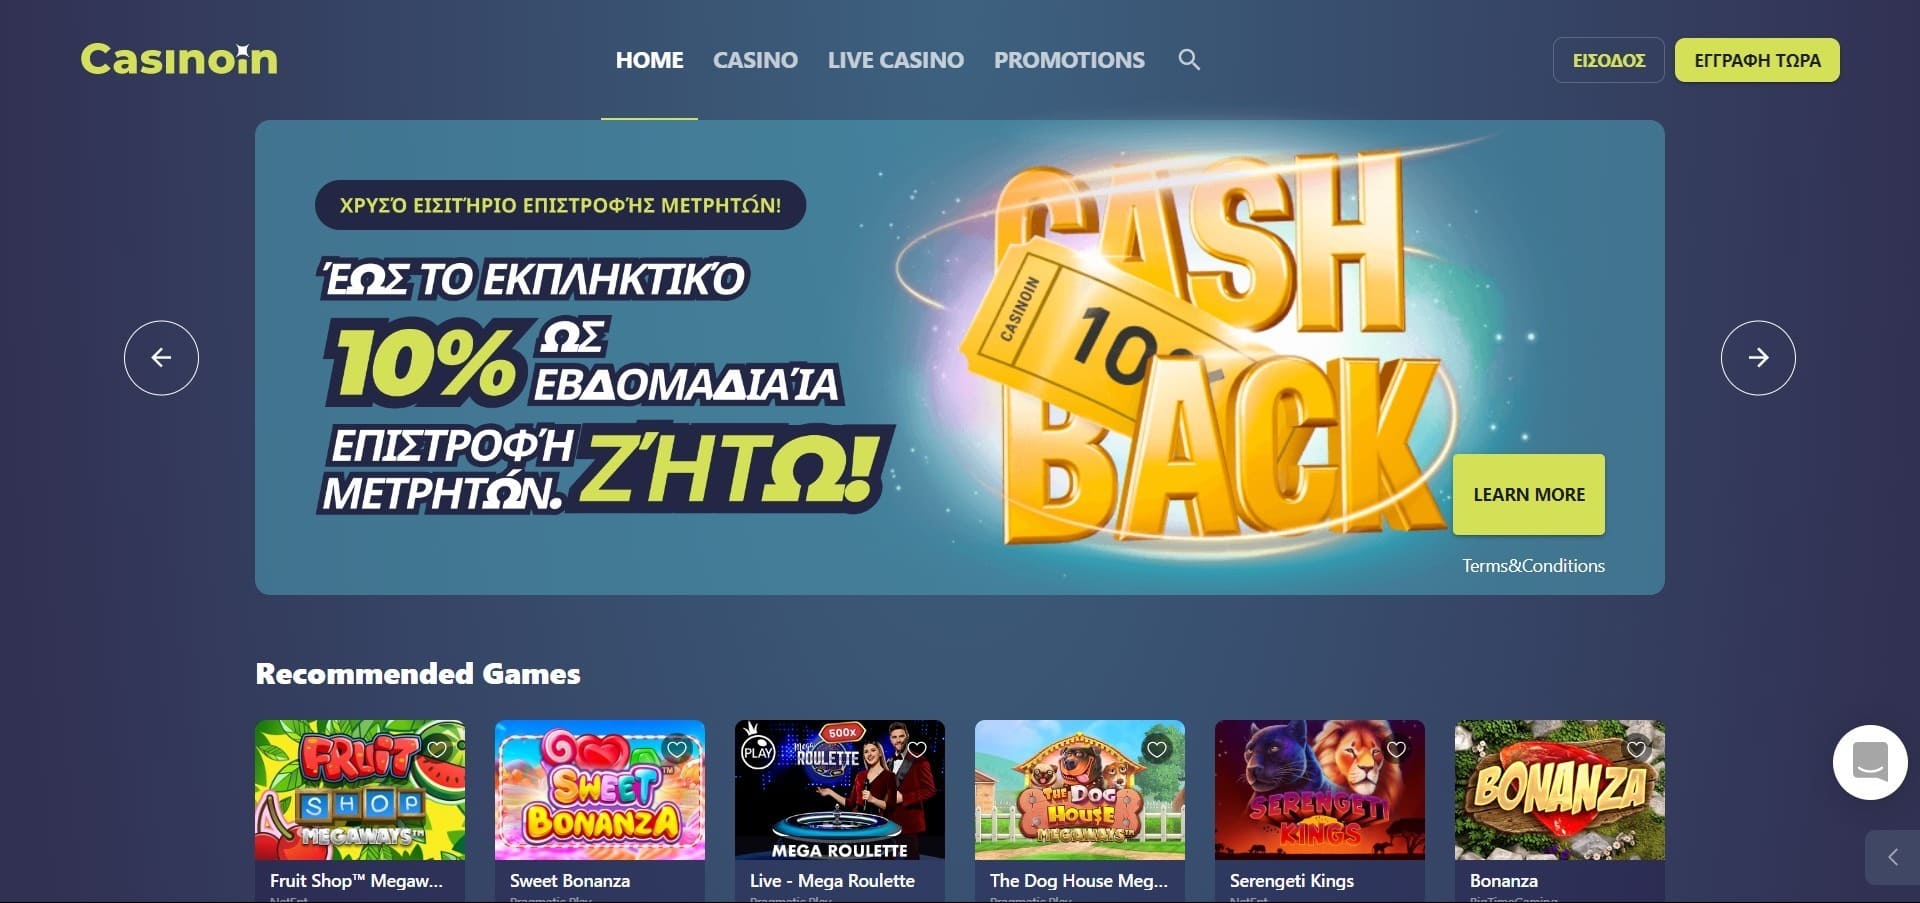 Επίσημος ιστότοπος της Casinoin